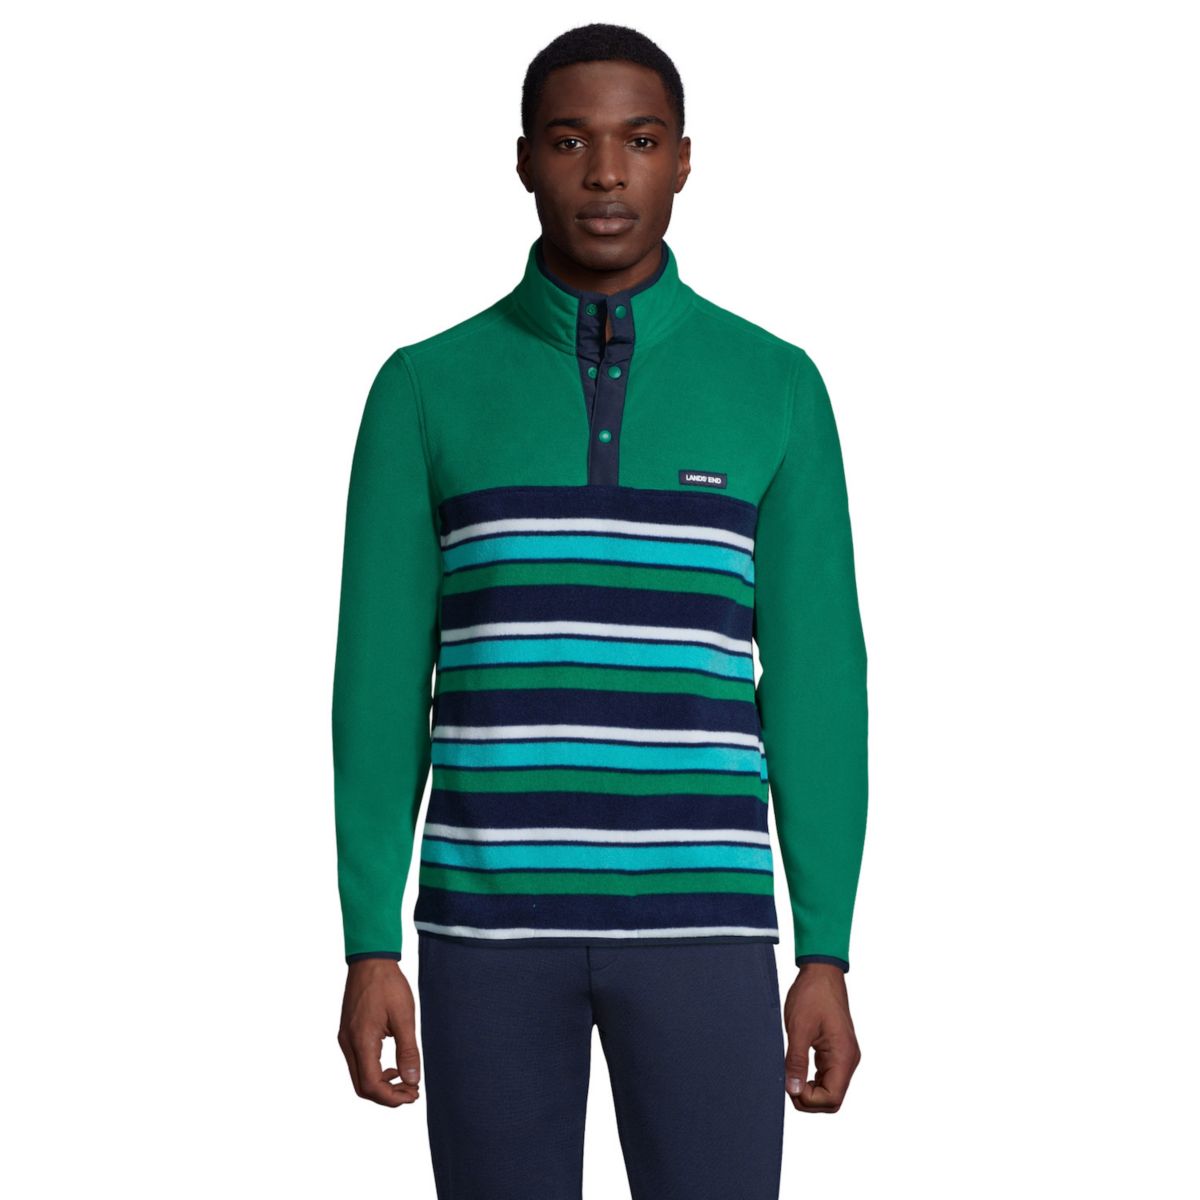 Мужская флисовая куртка-пуловер Lands' End T200 с цветными блоками и защелкой Lands' End